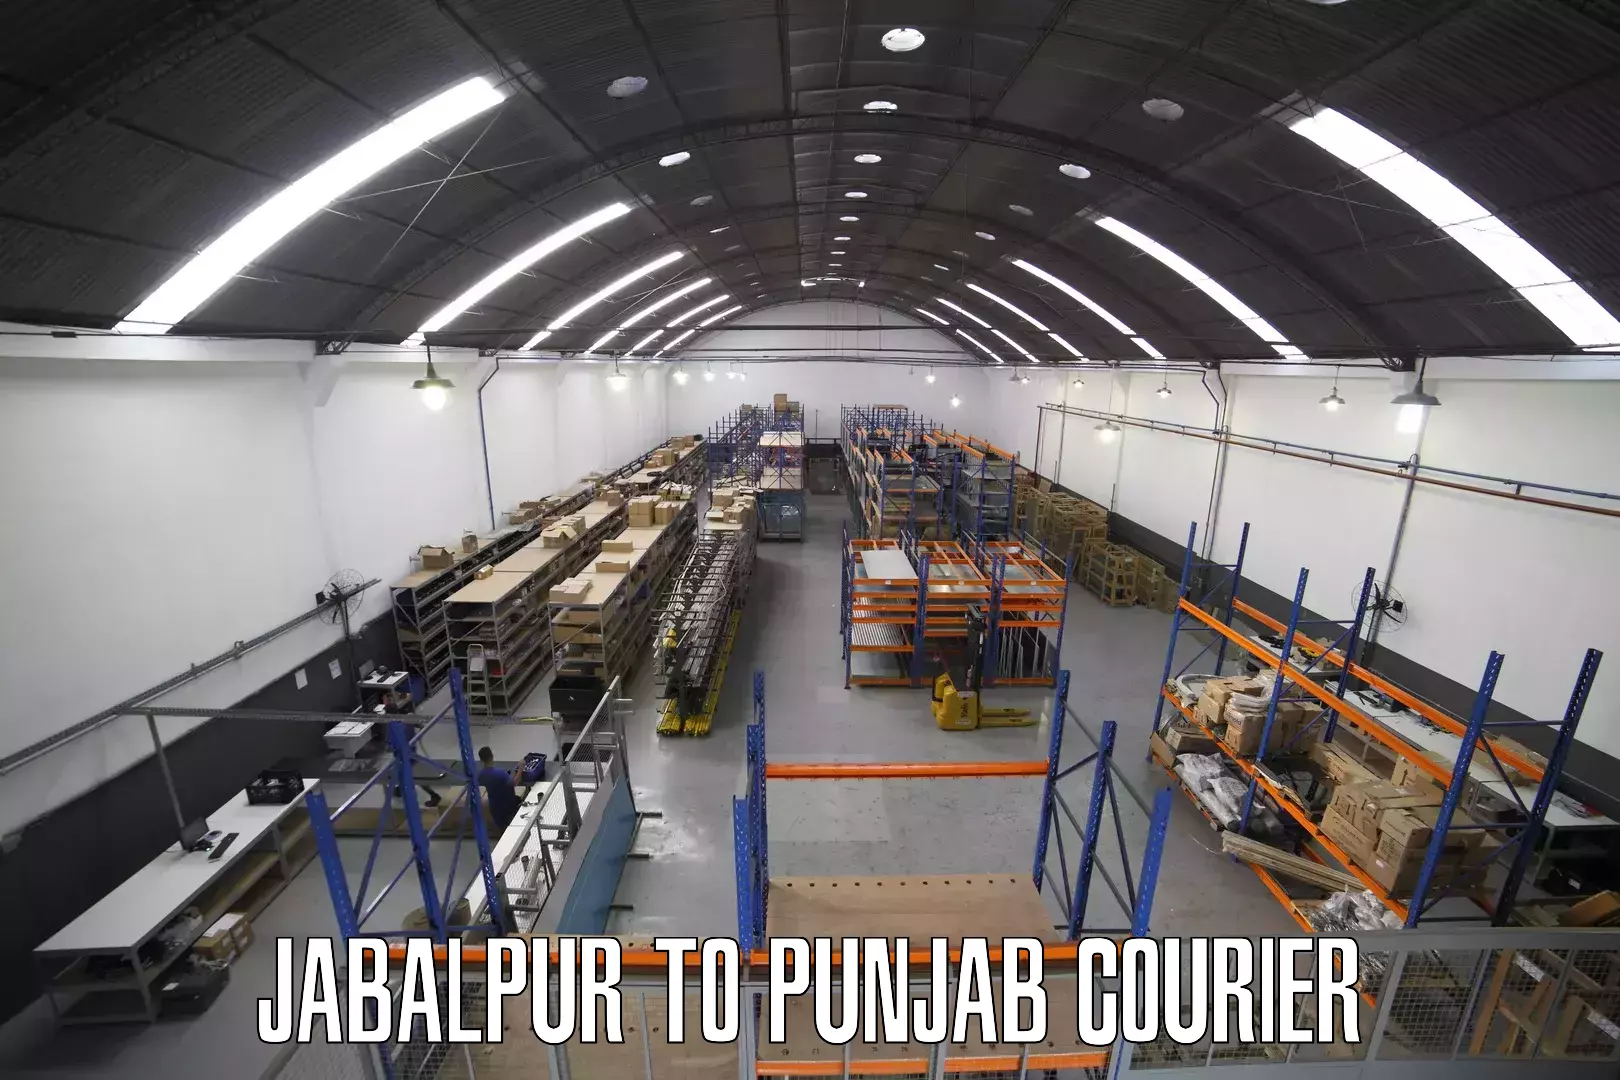 Customer-focused courier in Jabalpur to Mohali